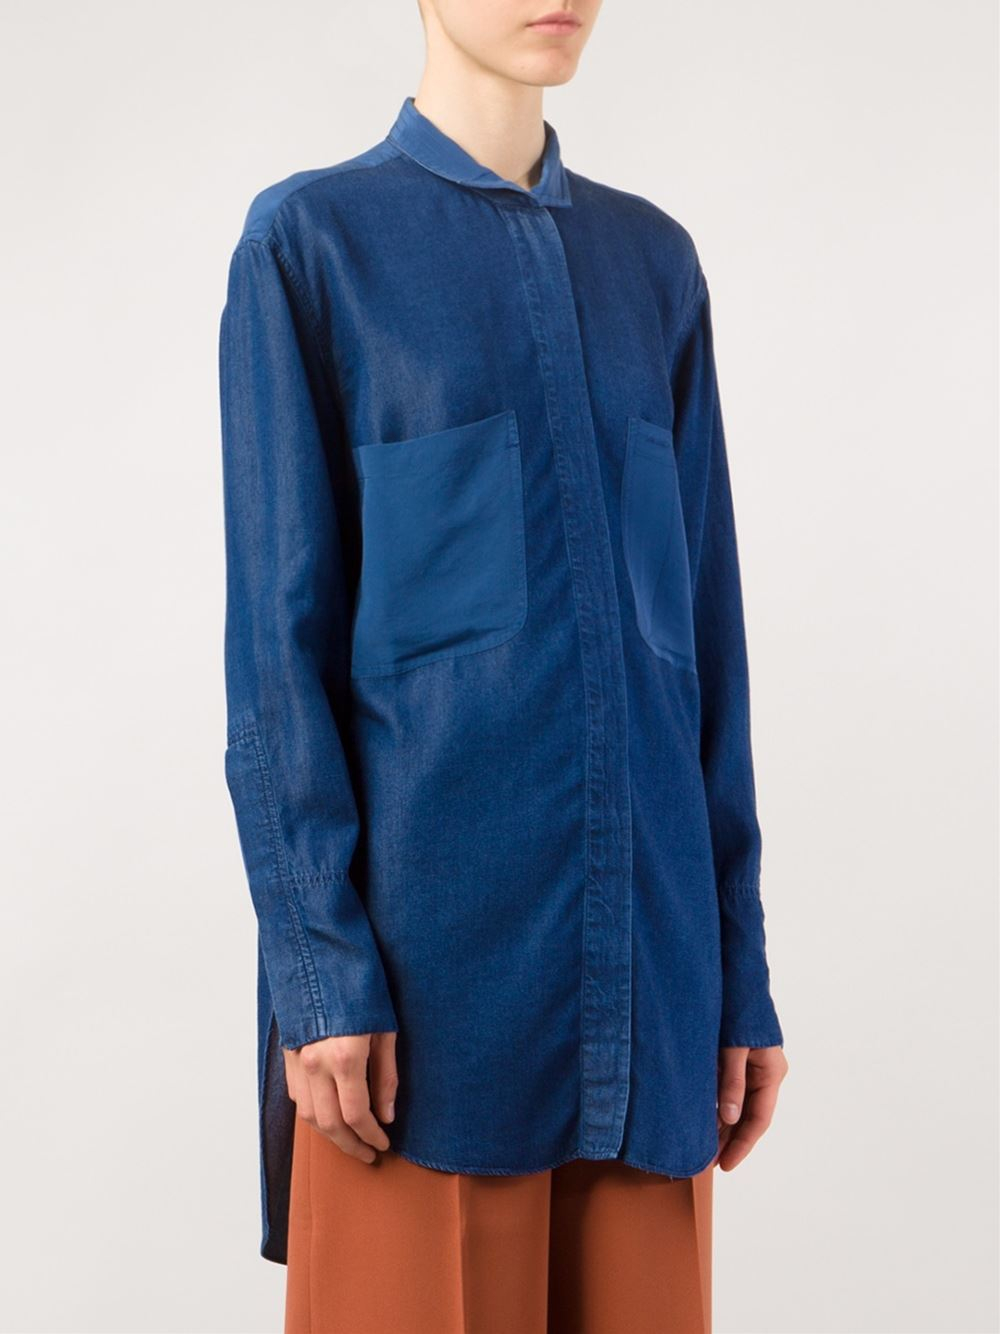 By Malene Birger 'filiri' Denim Shirt in Blue - Lyst